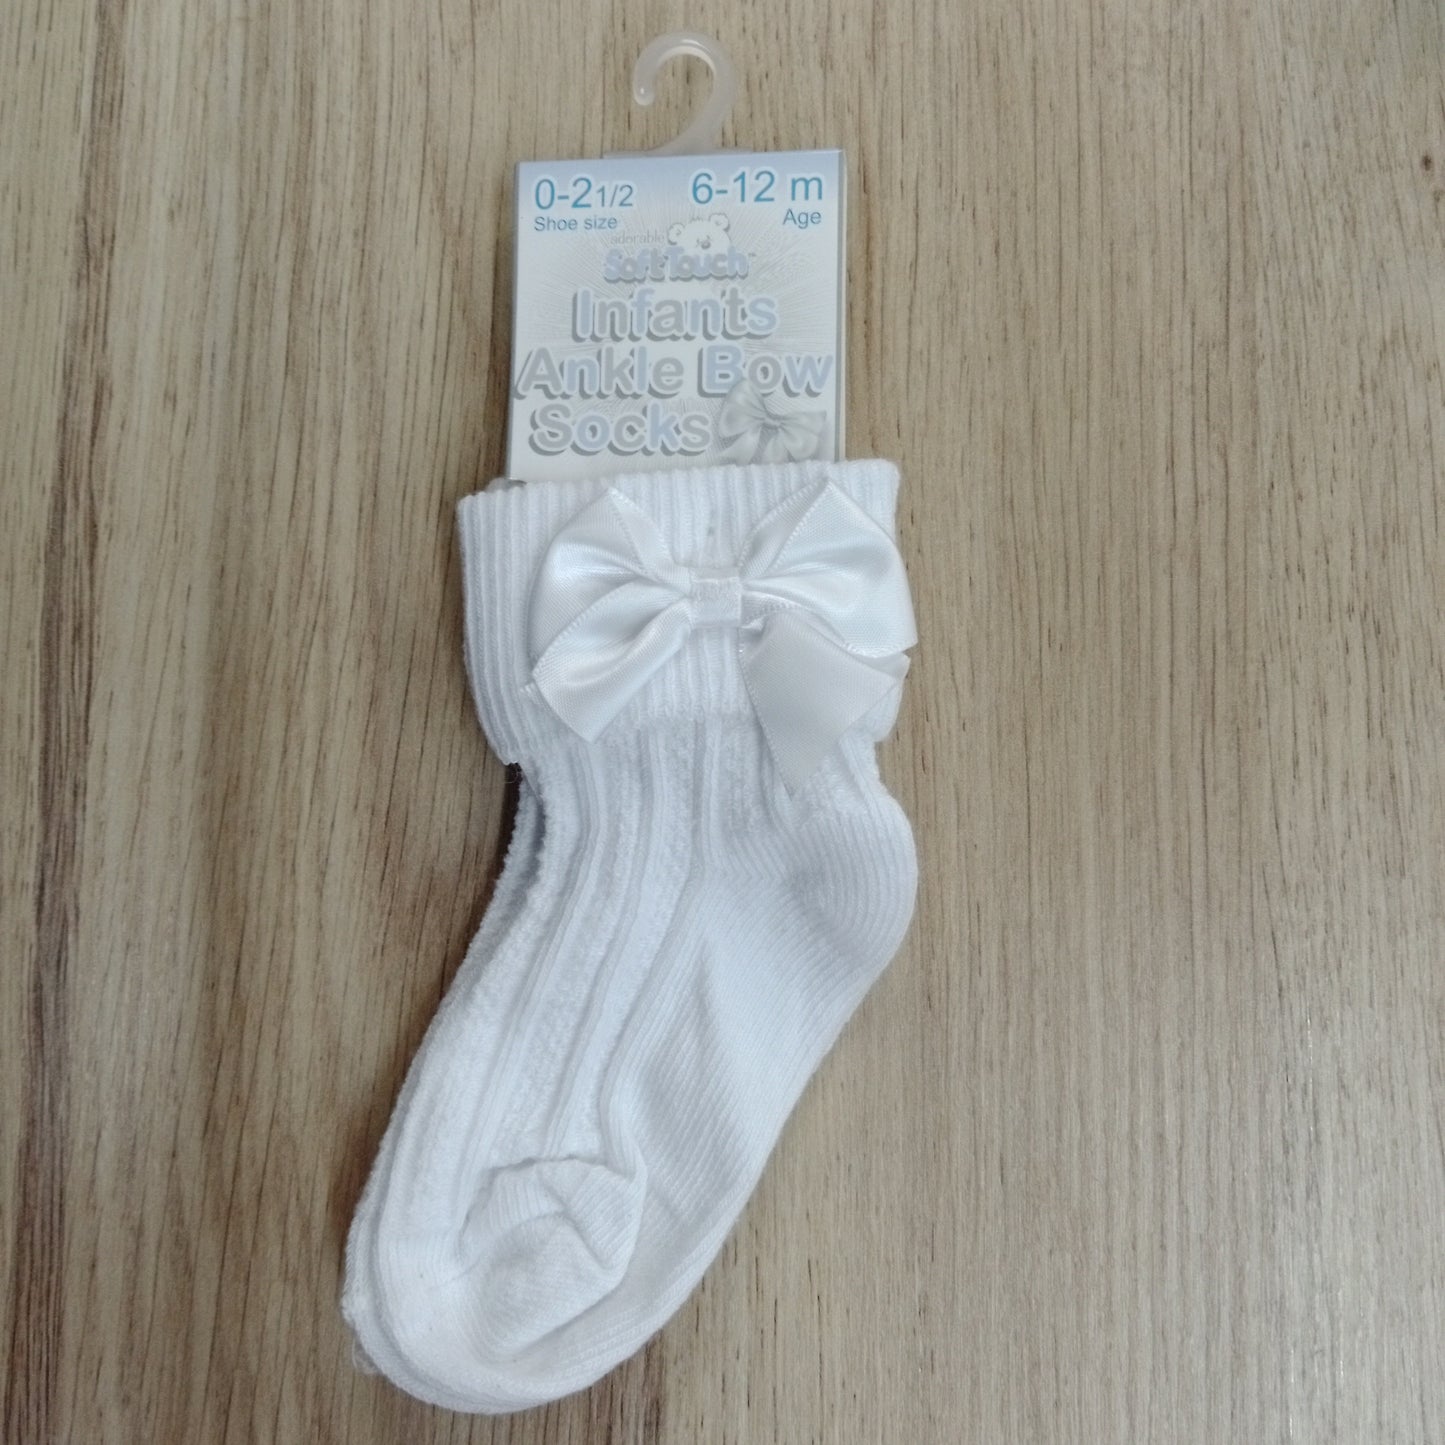 Infant Ankle Bow Sock White